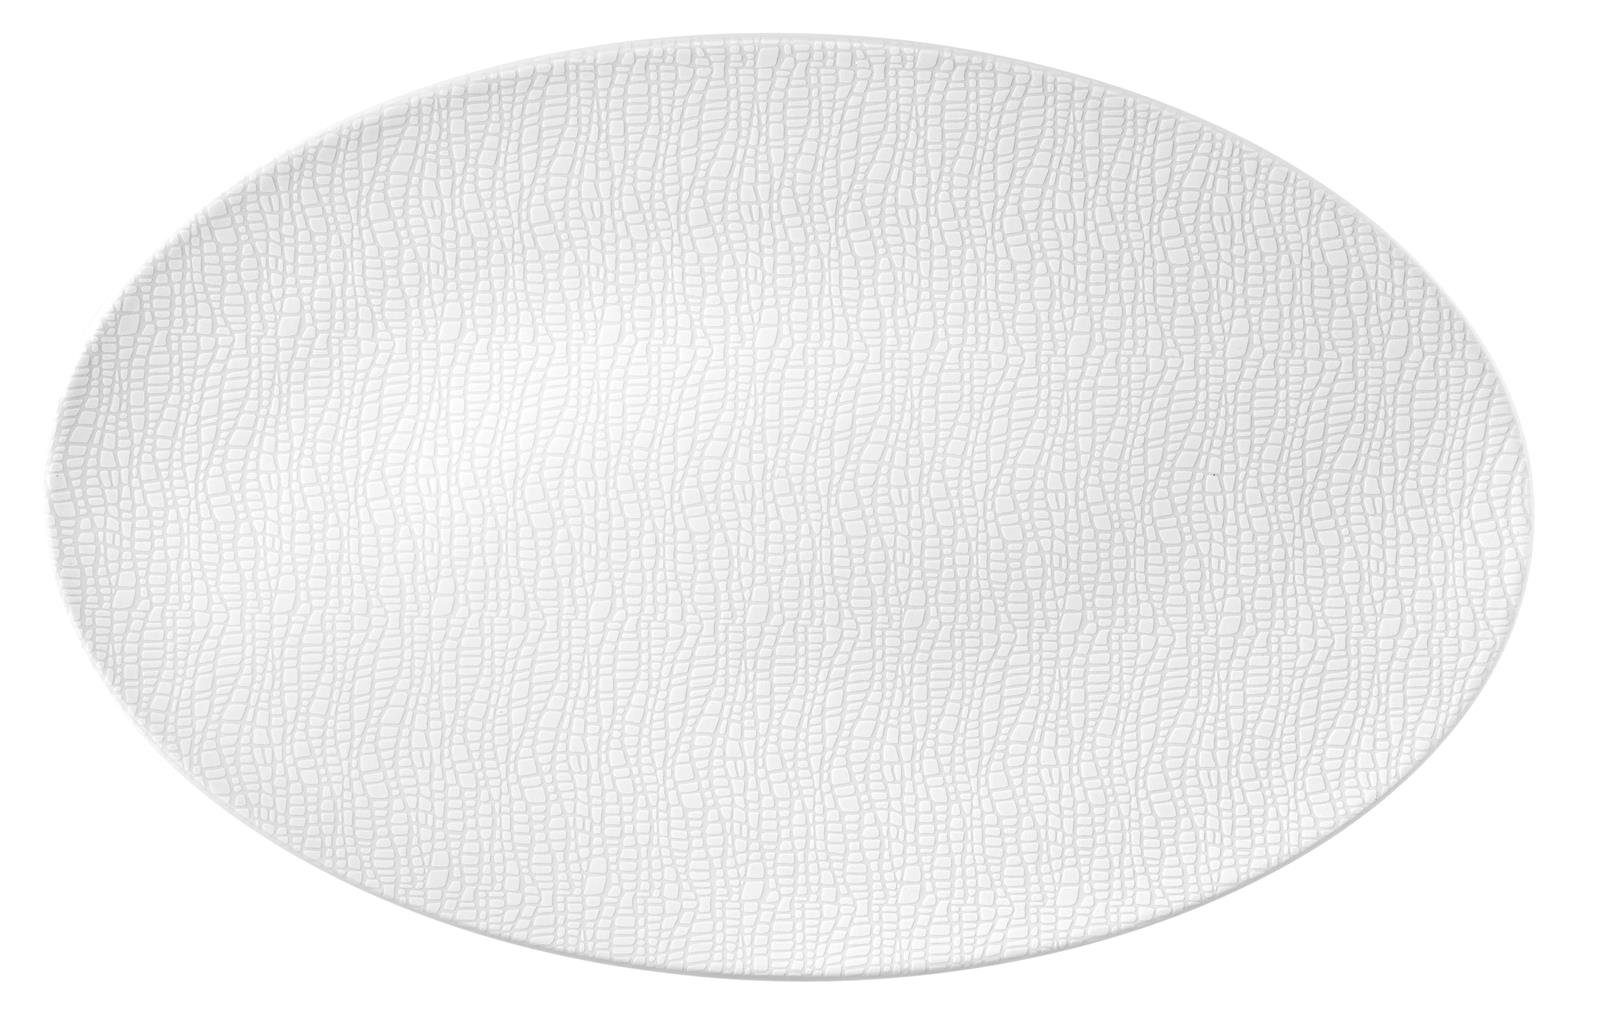 40x26 cm, Porzellan, Seltmann Seltmann Servierplatte L oval Fashion luxury Weiden (Packung) Weiden white Servierplatte